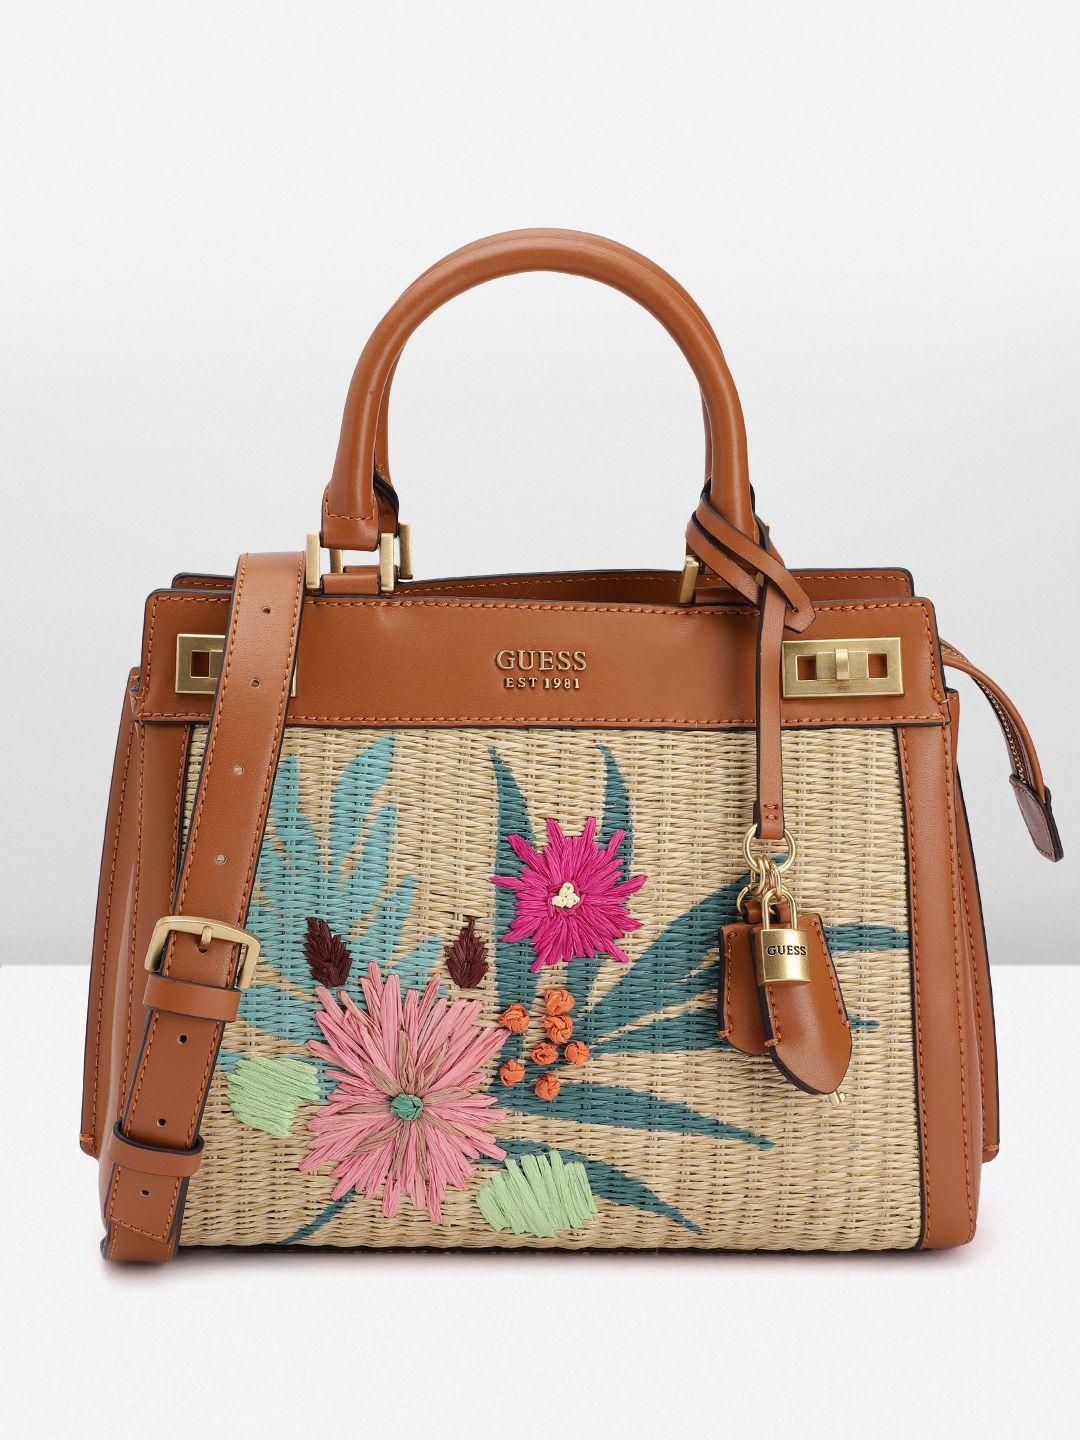 guess floral basket weave textured structured handheld bag